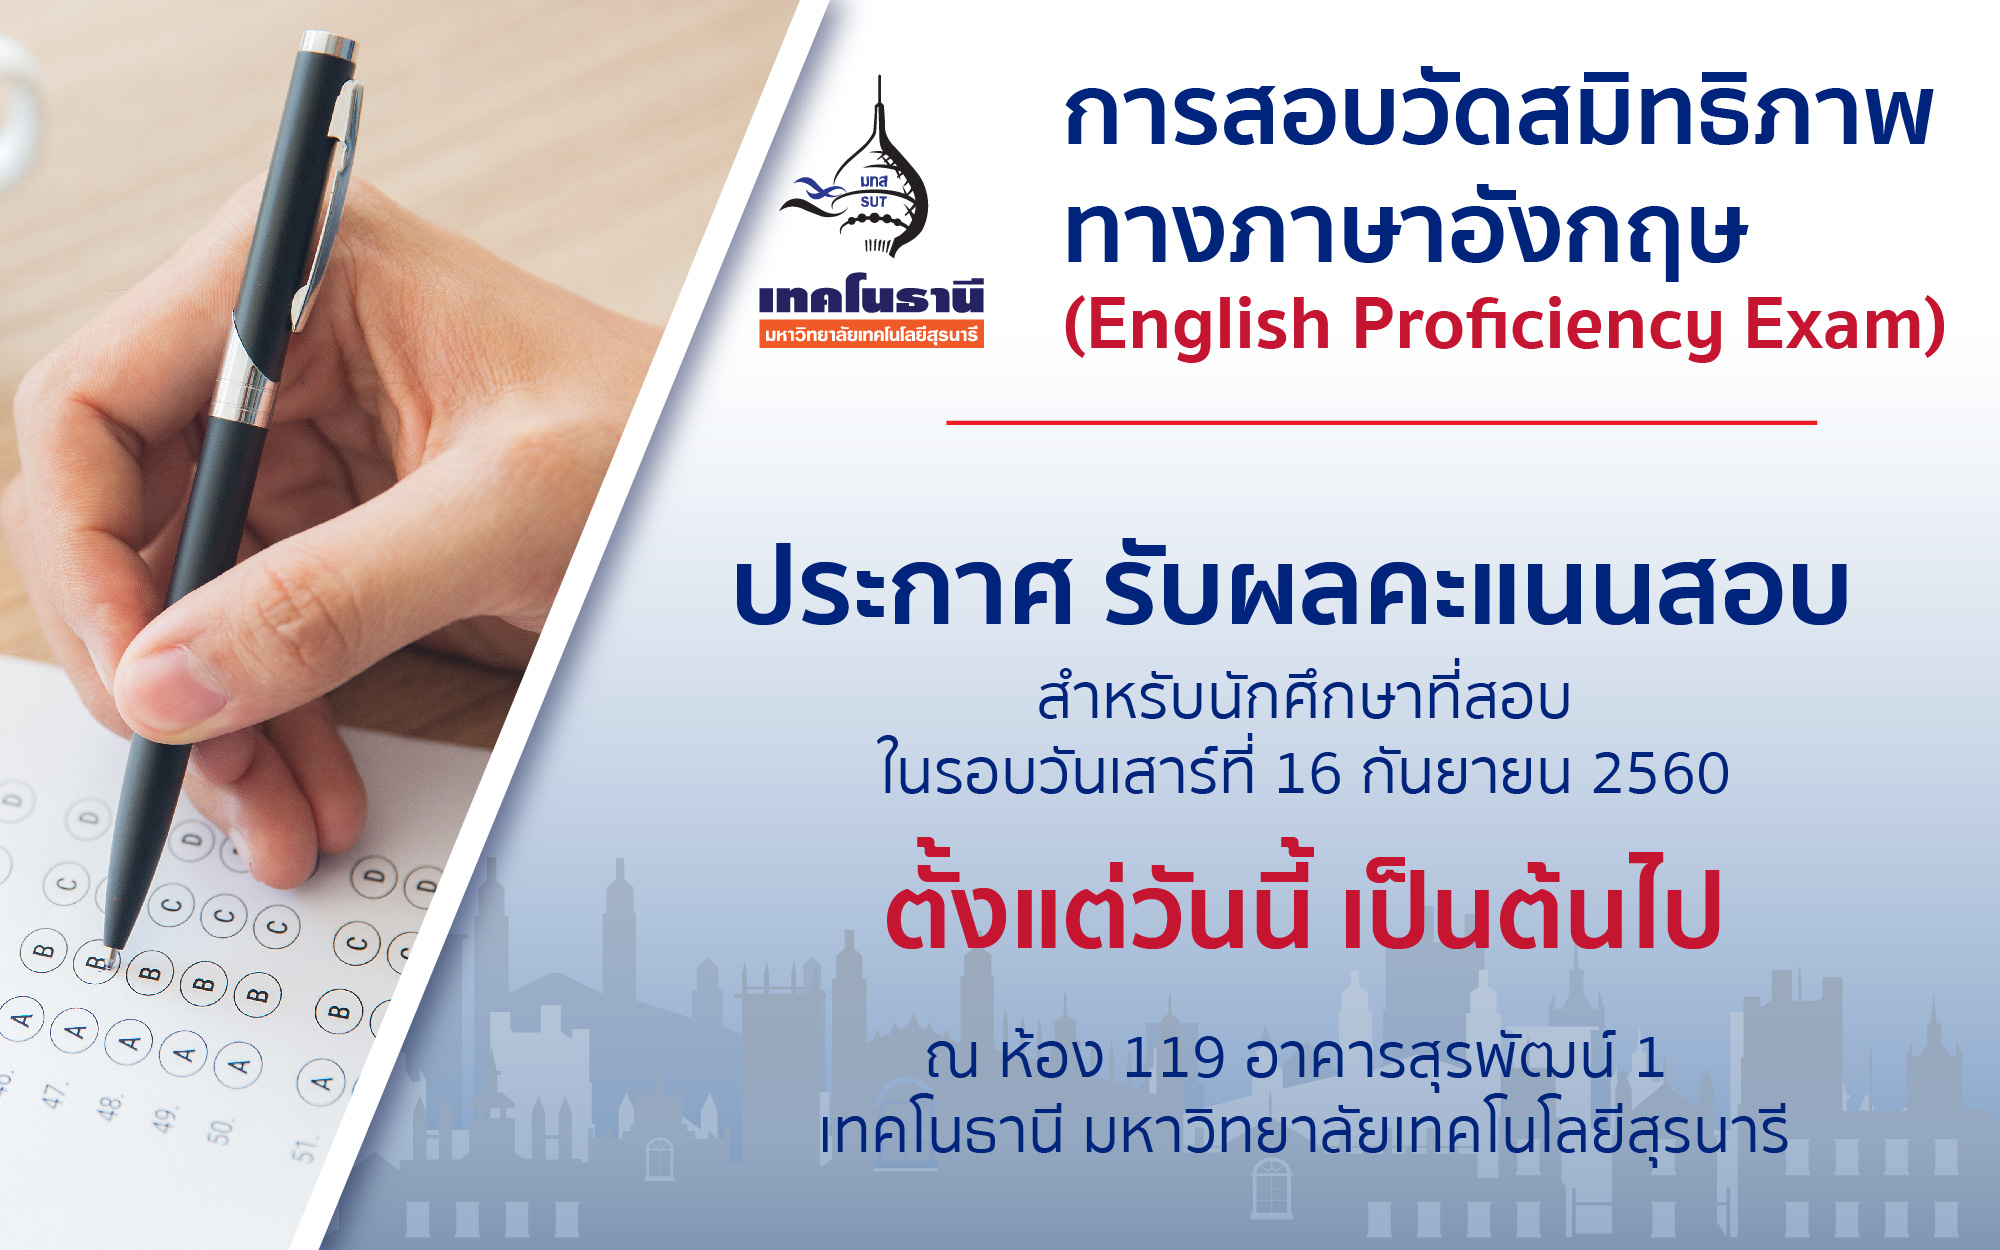 ประกาศรับผลคะแนนสอบ การสอบวัดสมิทธิภาพทางภาษาอังกฤษ (English Proficiency Exam)